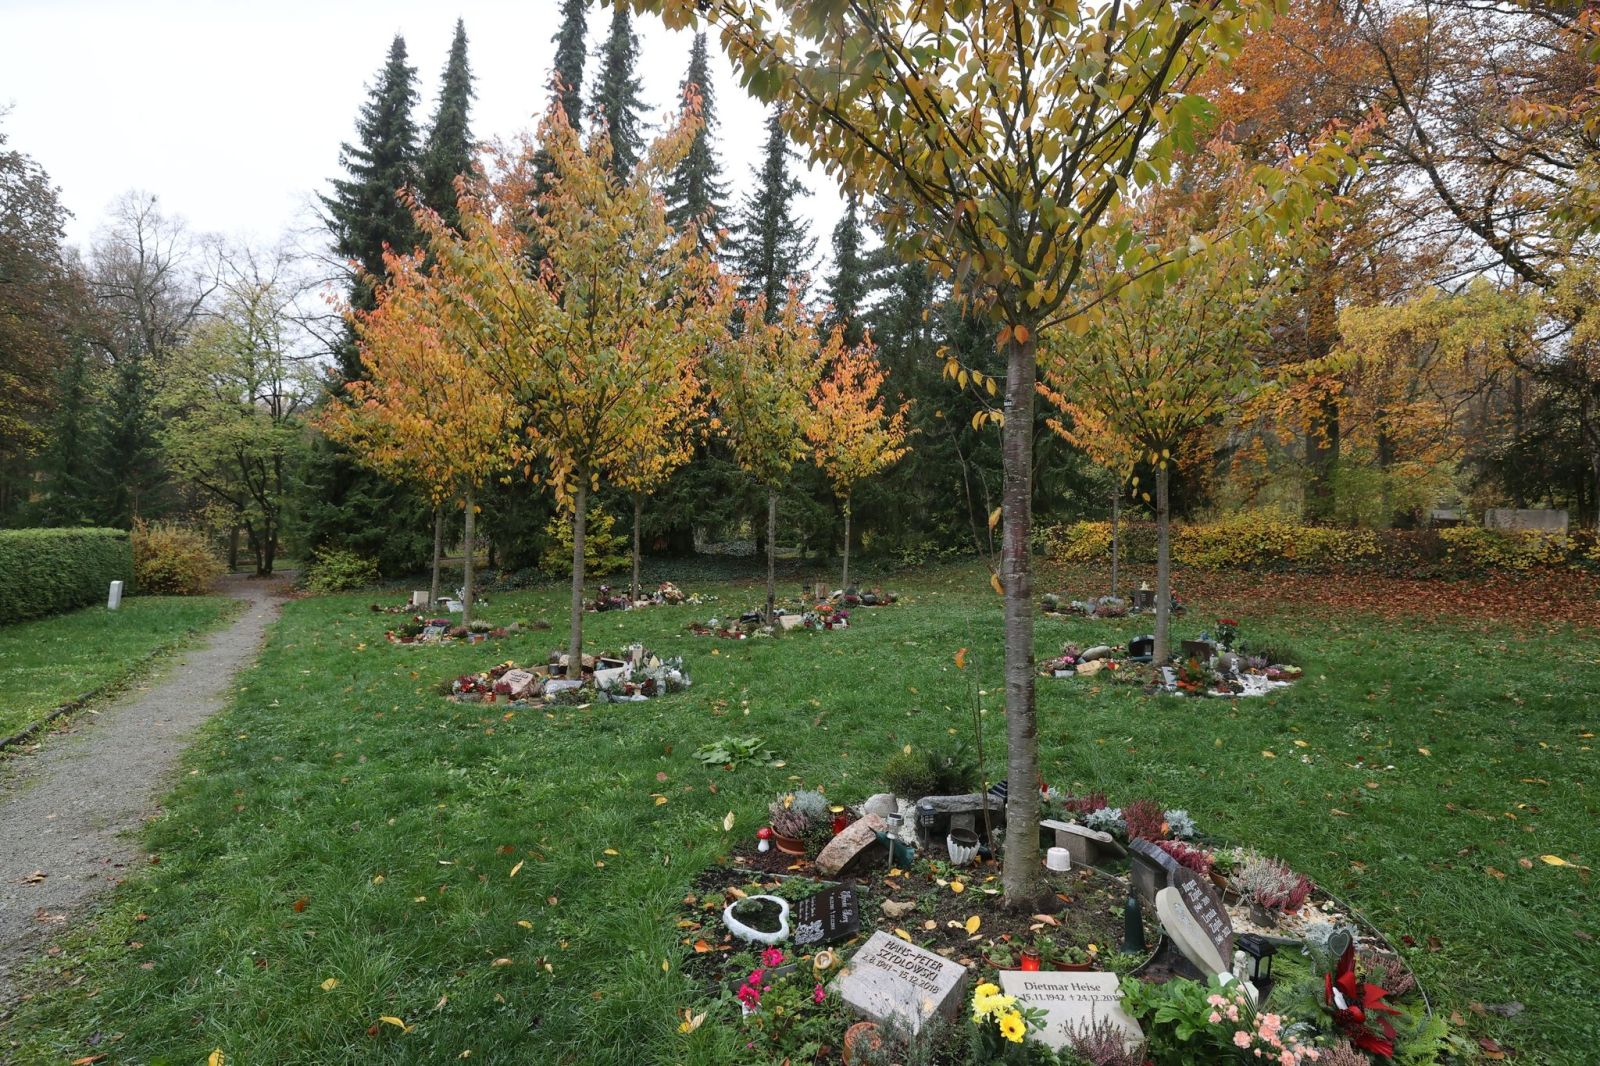 Baumgräber, Urnenflächen unter Bäumen oder um Bäume gruppiert, sind zu sehen.